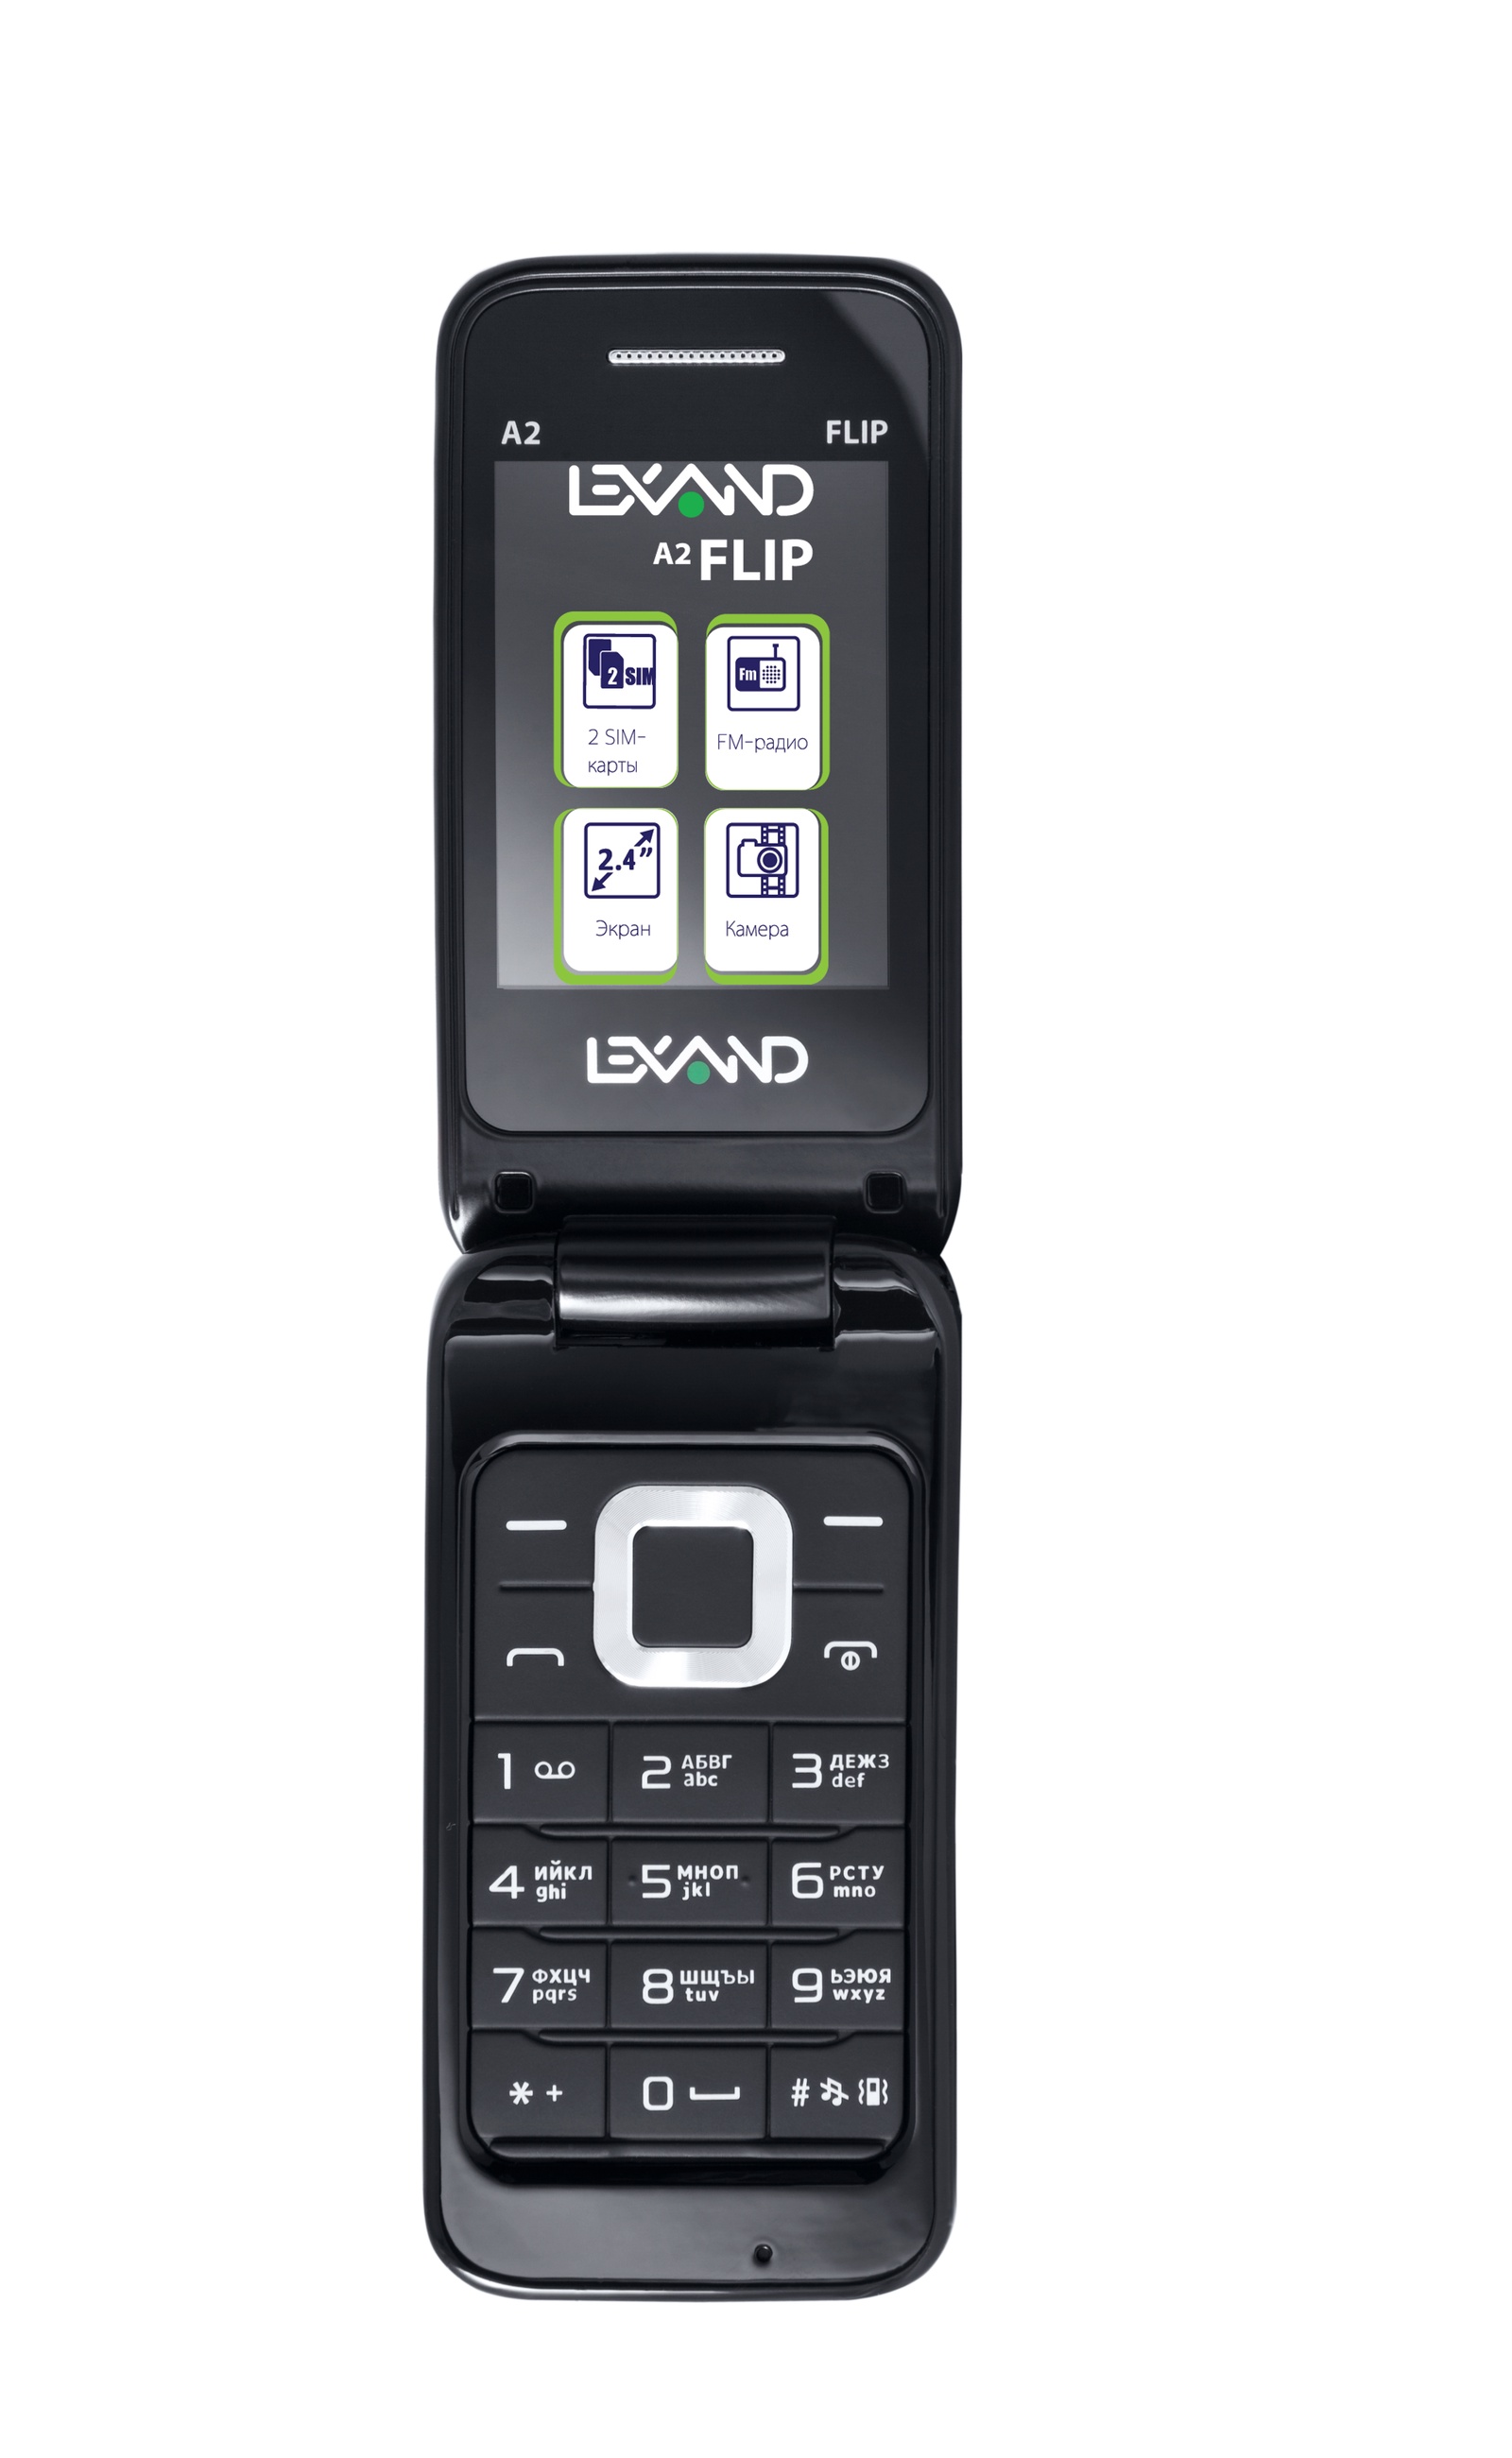 LexandМобильныйтелефонA2FLIP,черный